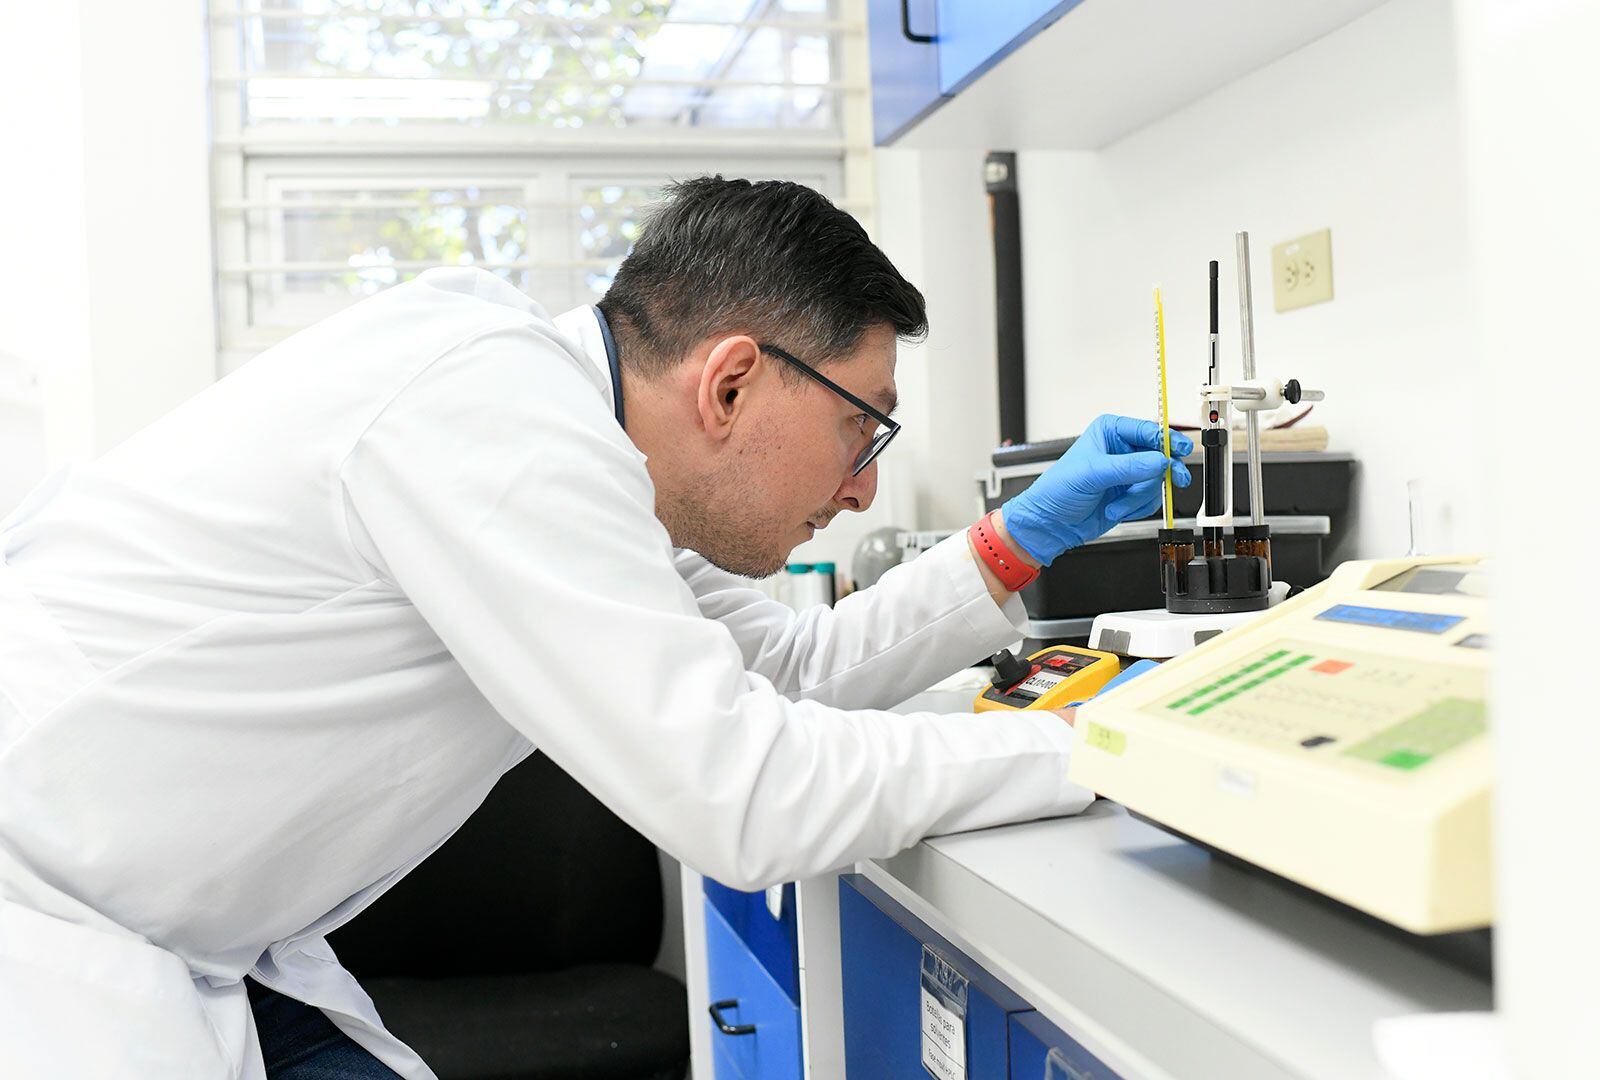 Cuatro laboratorios de la Universidad de Costa Rica hicieron los análisis que permitieron identificar el xileno en el agua. Entre ellos el Centro de Electroquímica y Energía Química (CELEQ). Fotografía: Laura Rodríguez / UCR